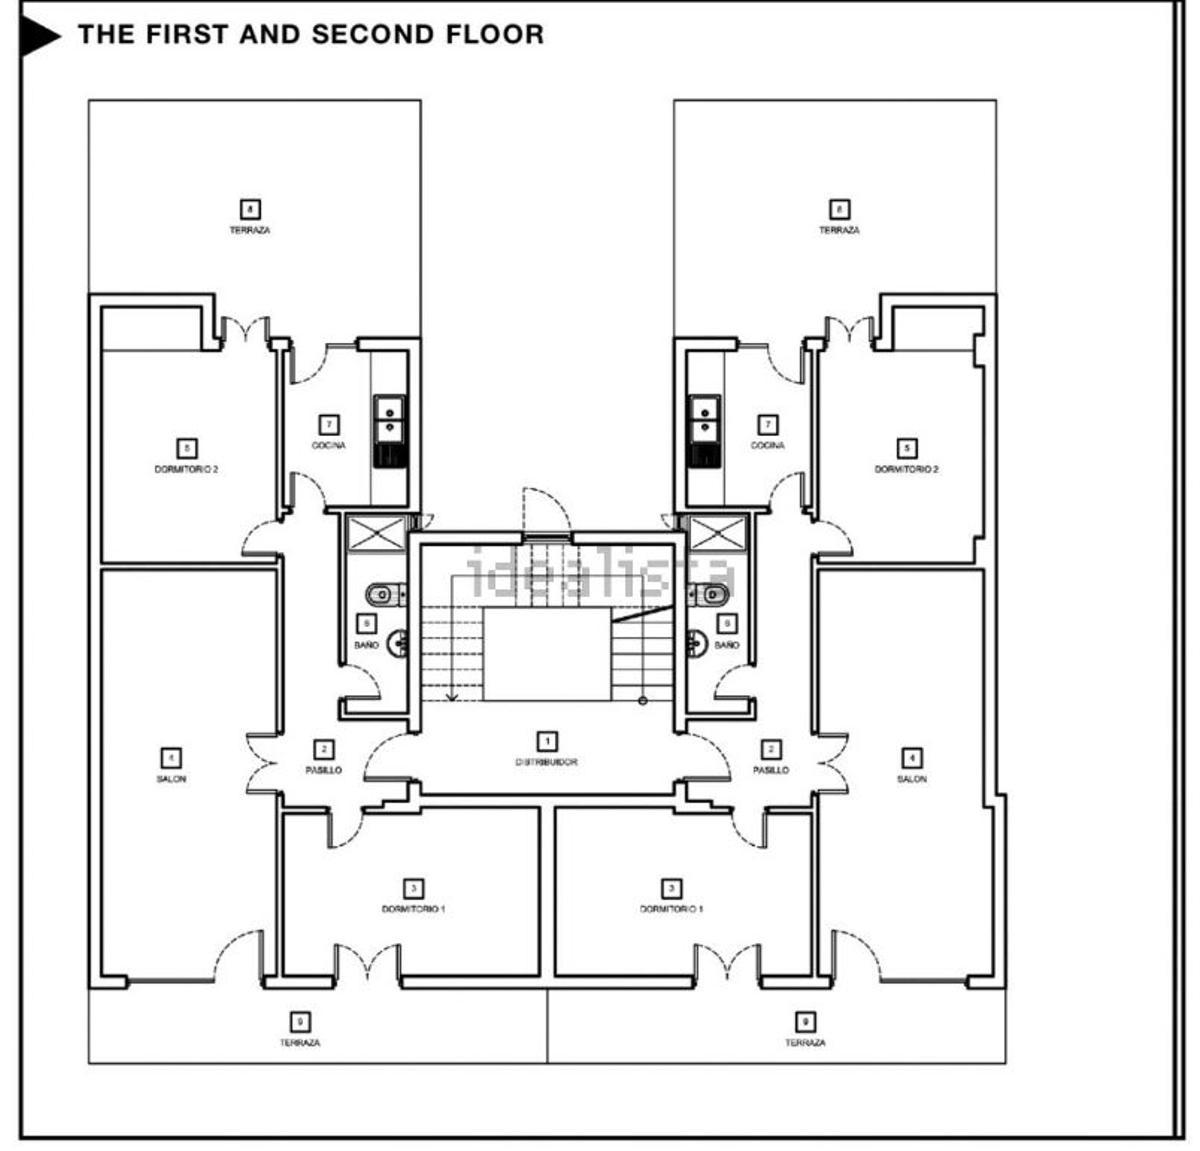 Plano del primer y segundo piso